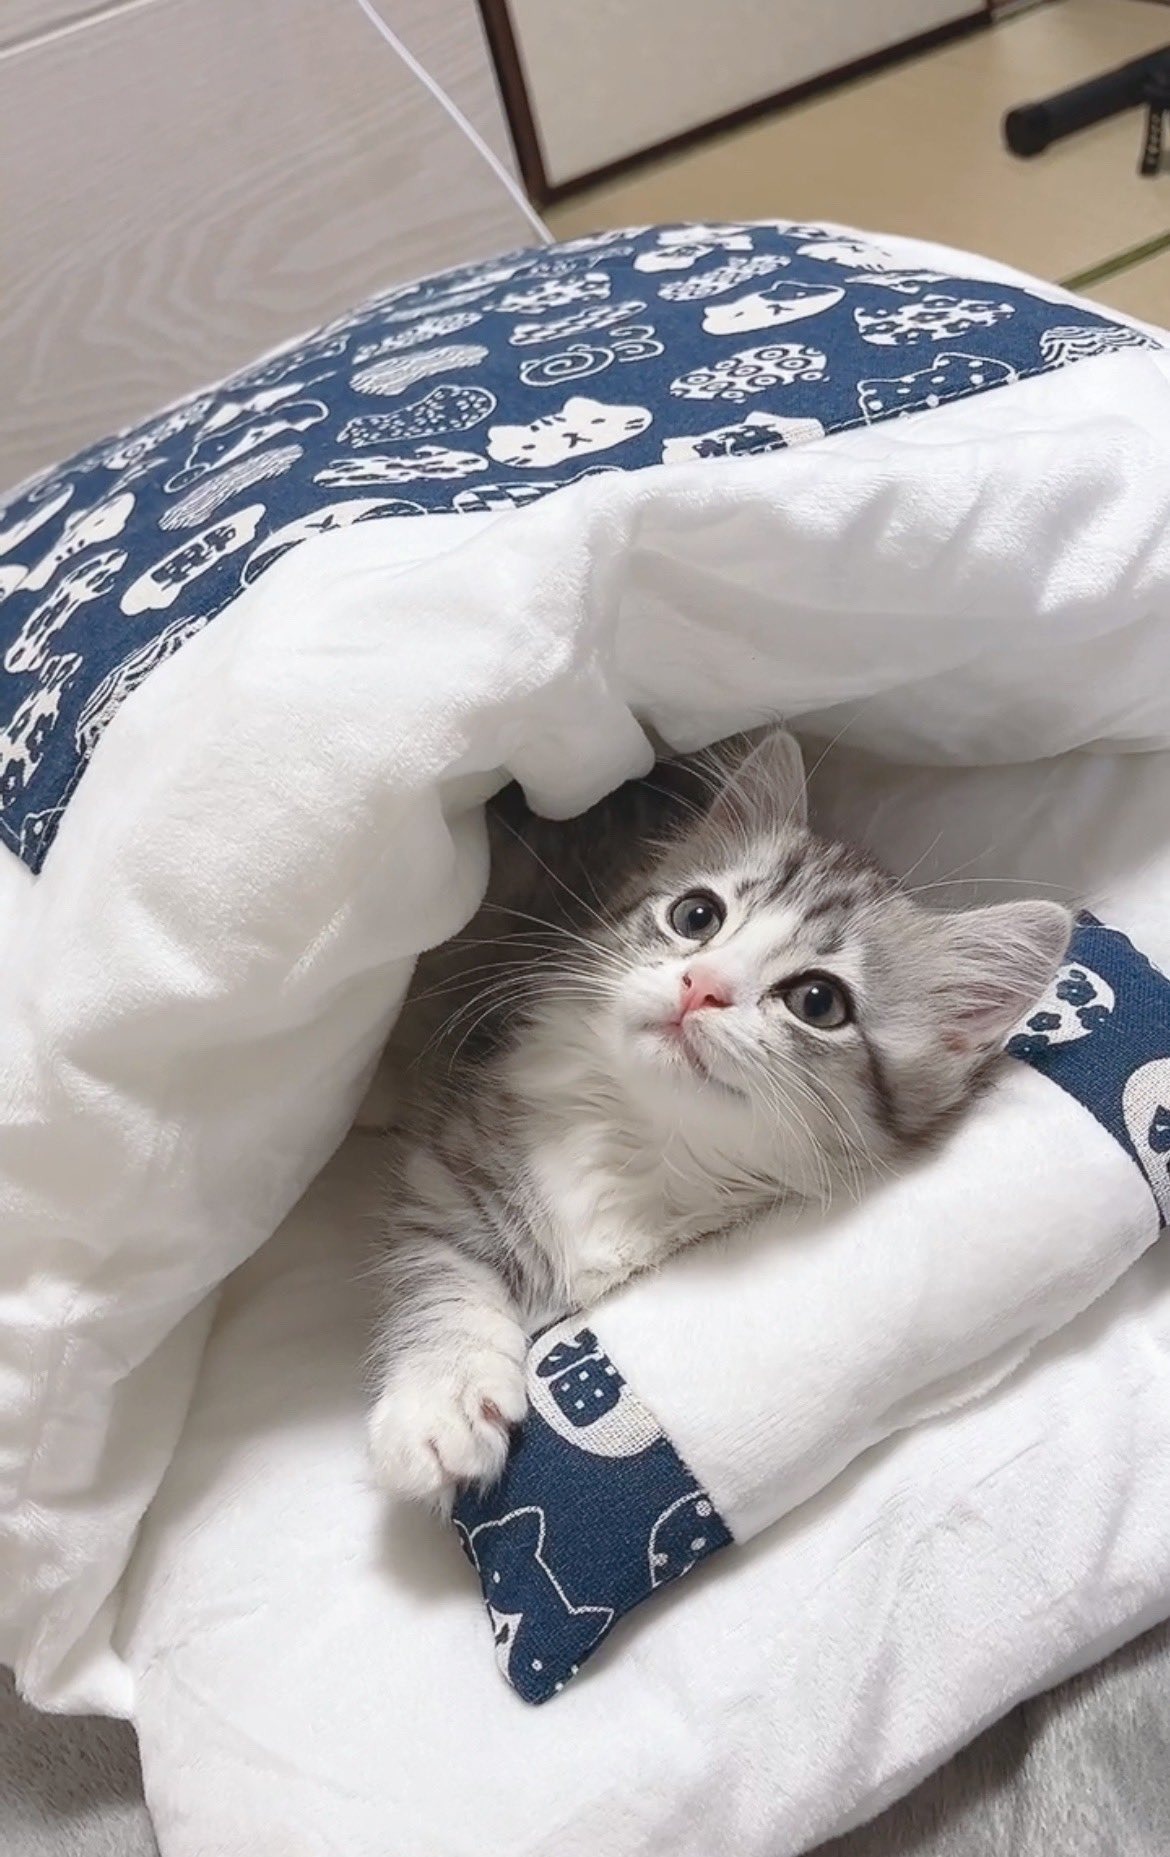 布団に潜る猫